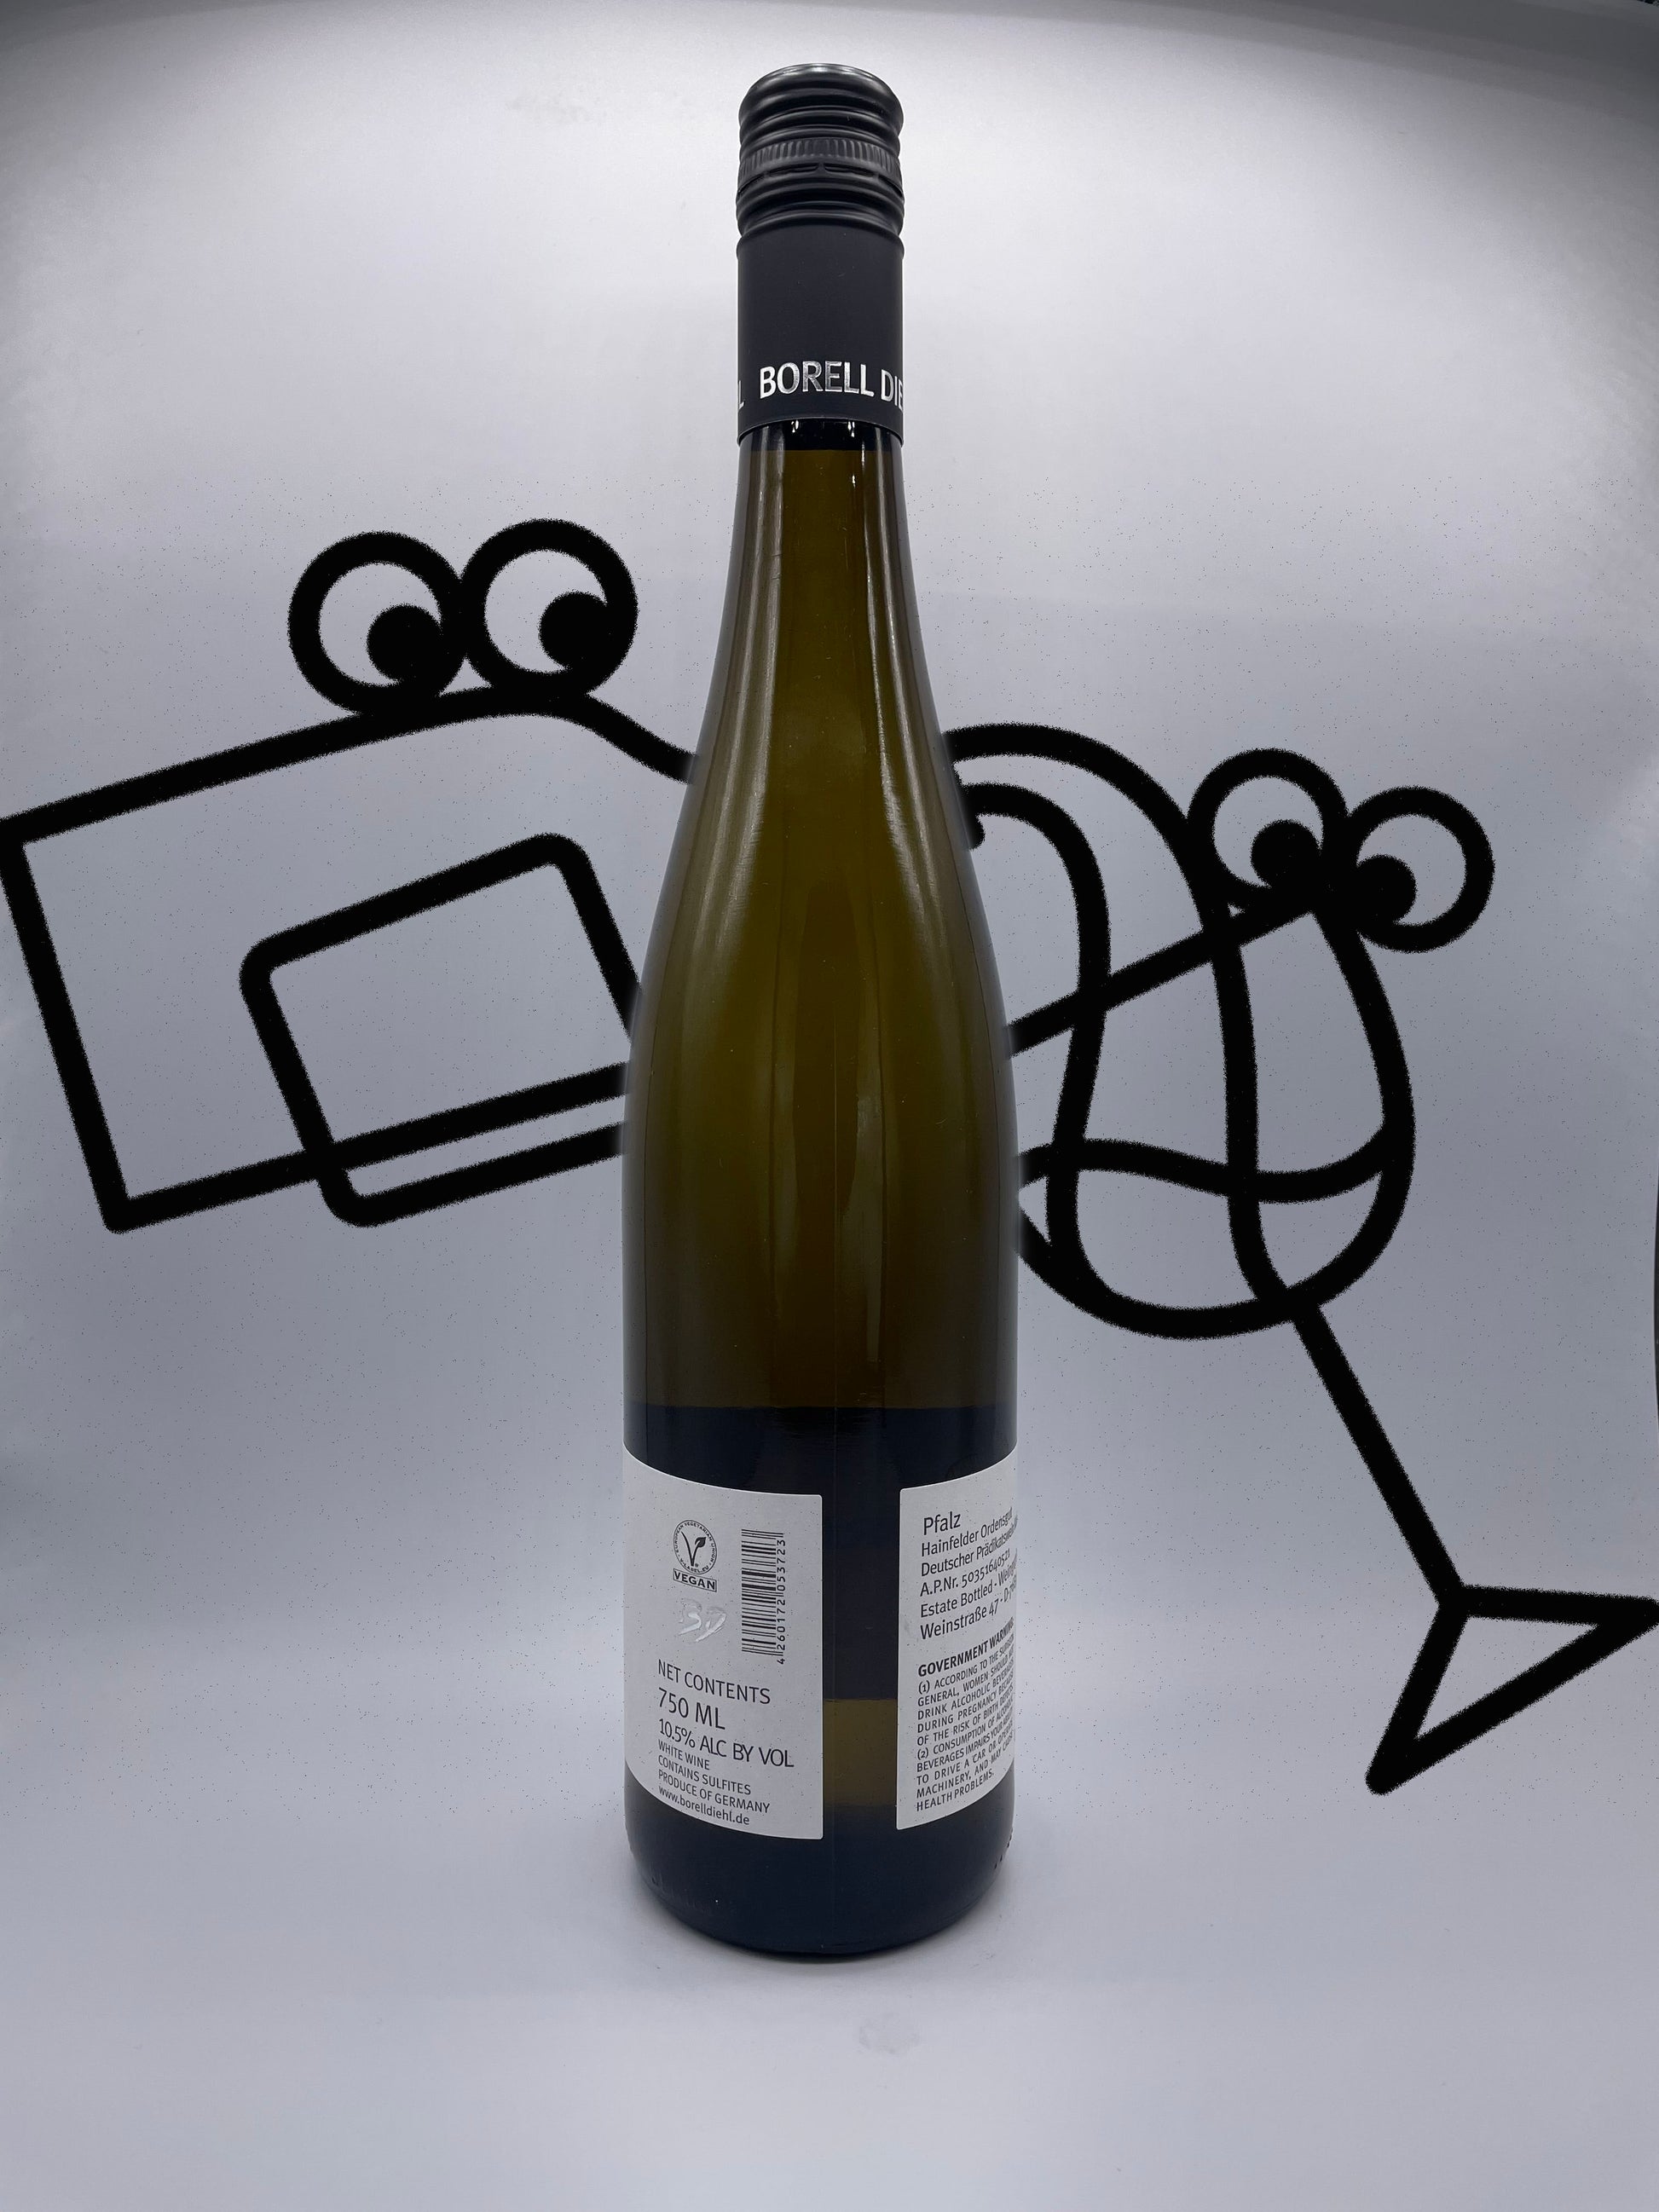 Borell-Diehl Gewurztraminer Kabinett Pfalz, Germany - Williston Park Wines & Spirits